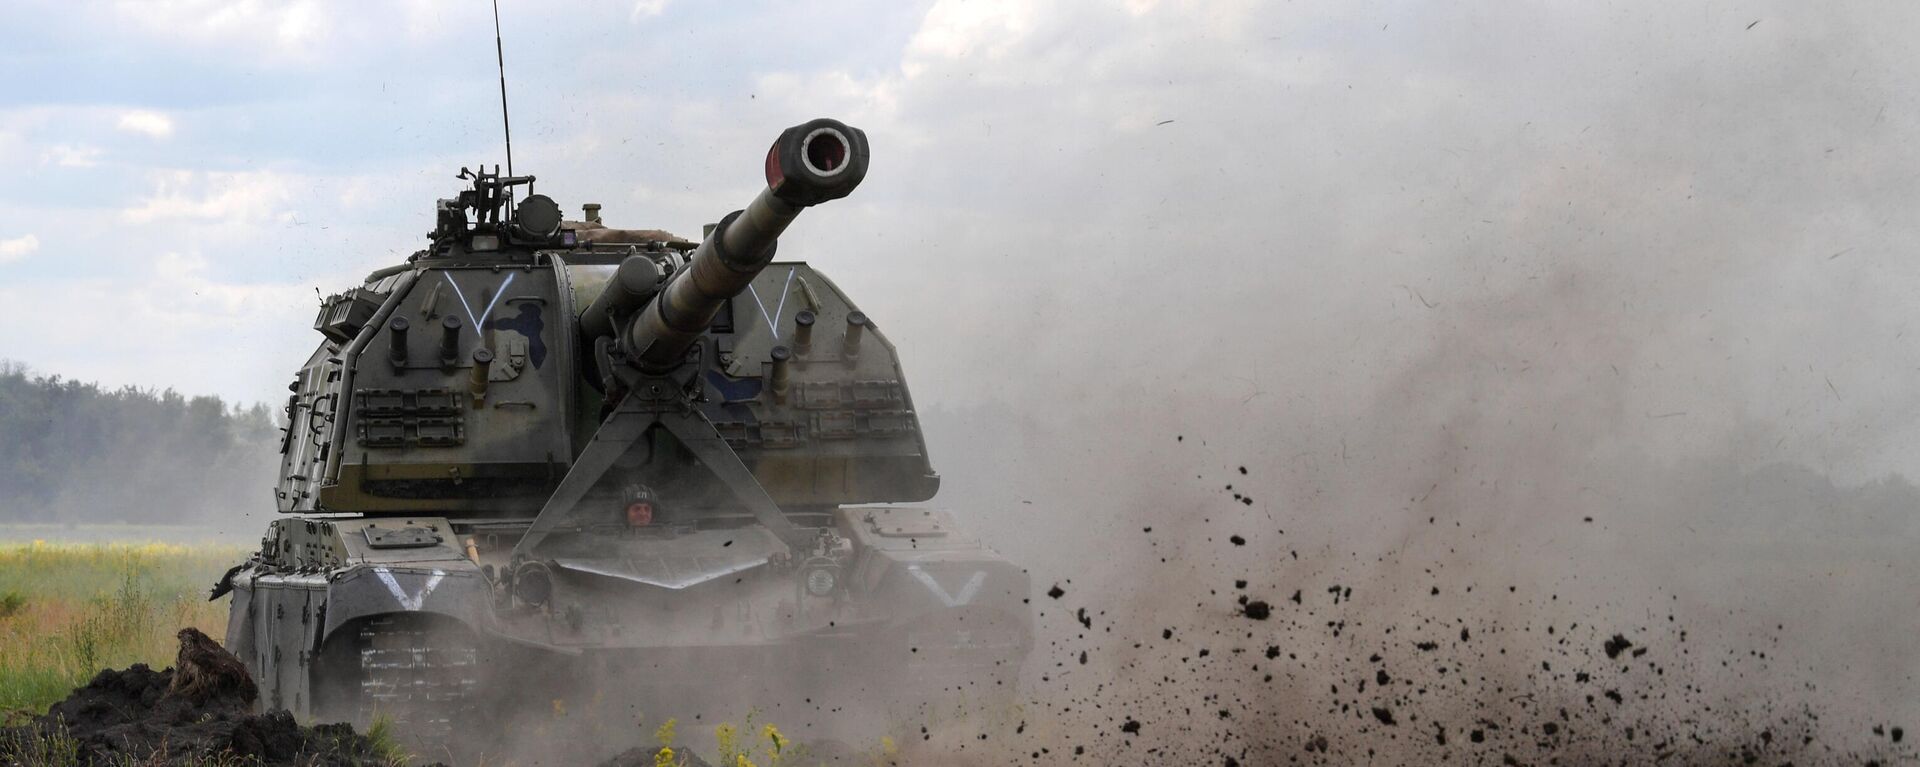 Tanque de artilharia autopropulsado Msta-S na zona da operação especial russa na Ucrânia - Sputnik Brasil, 1920, 06.07.2022